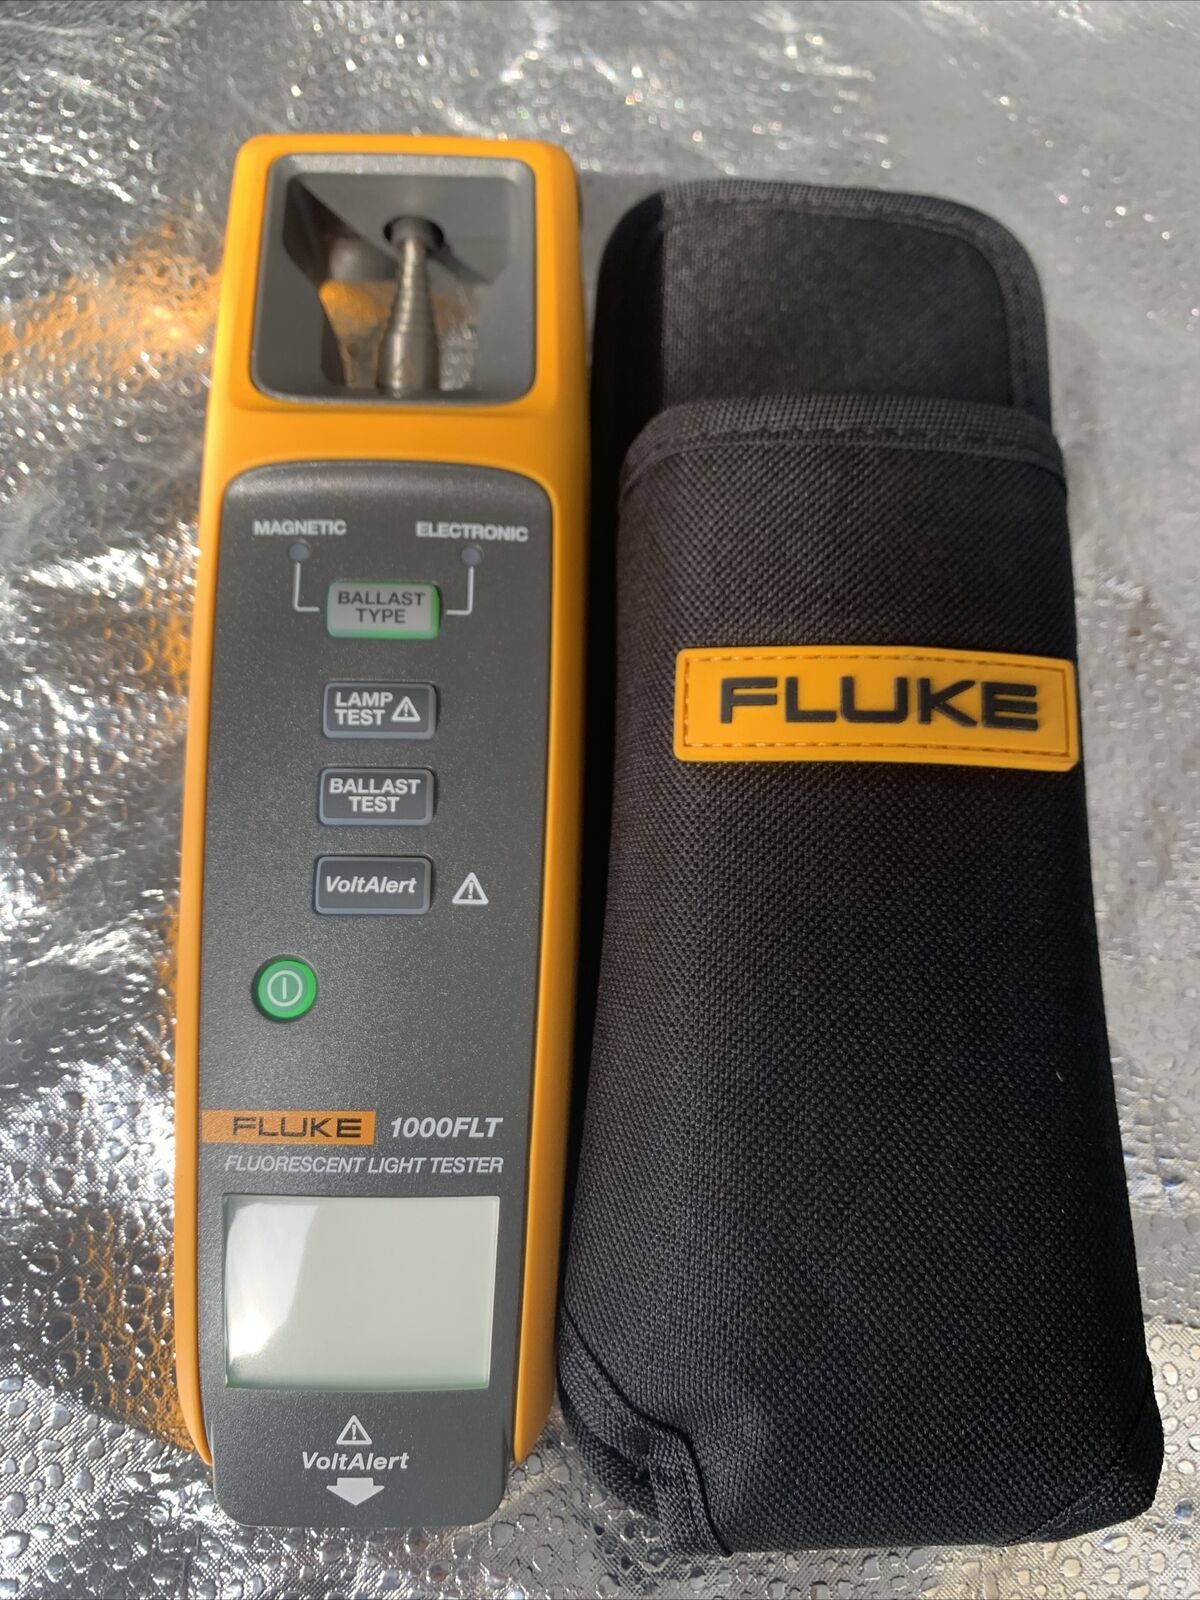 Slightly Used Fluke Model 1000FLT Fluorescent Light Tester Up to 400V AC